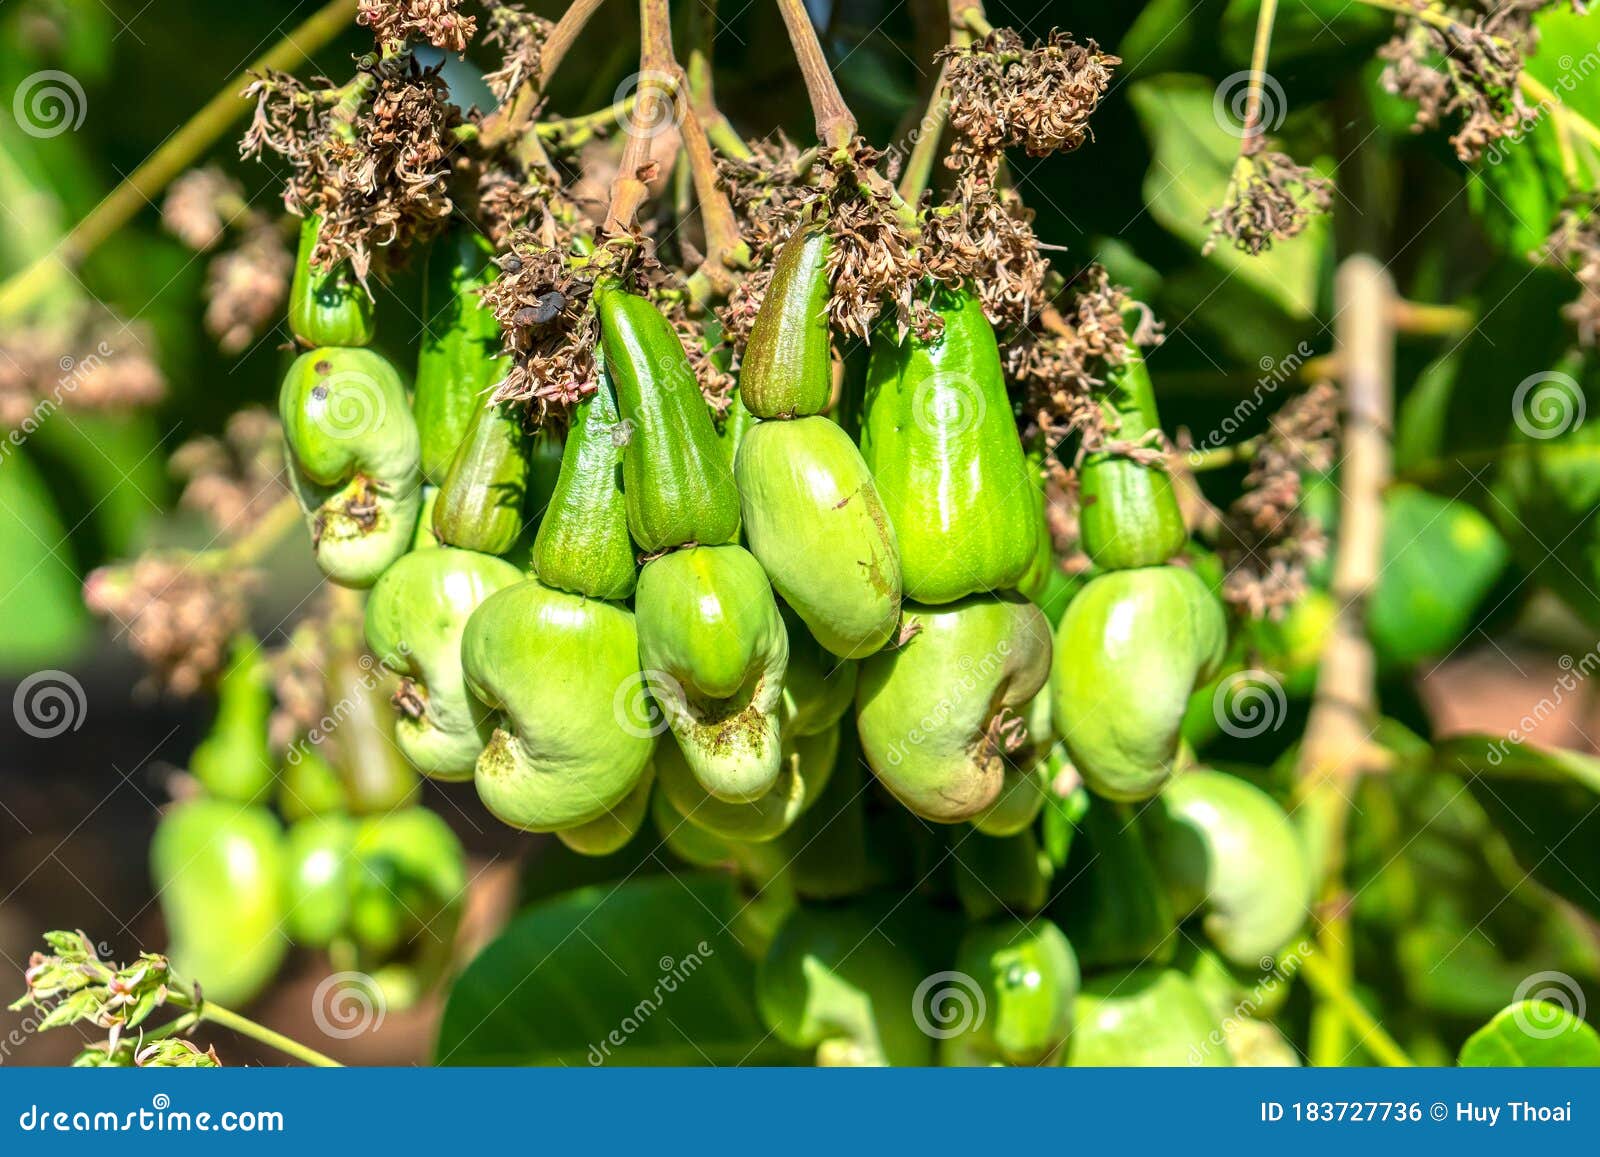 cashew nut fruit or anacardium occidentale on tree